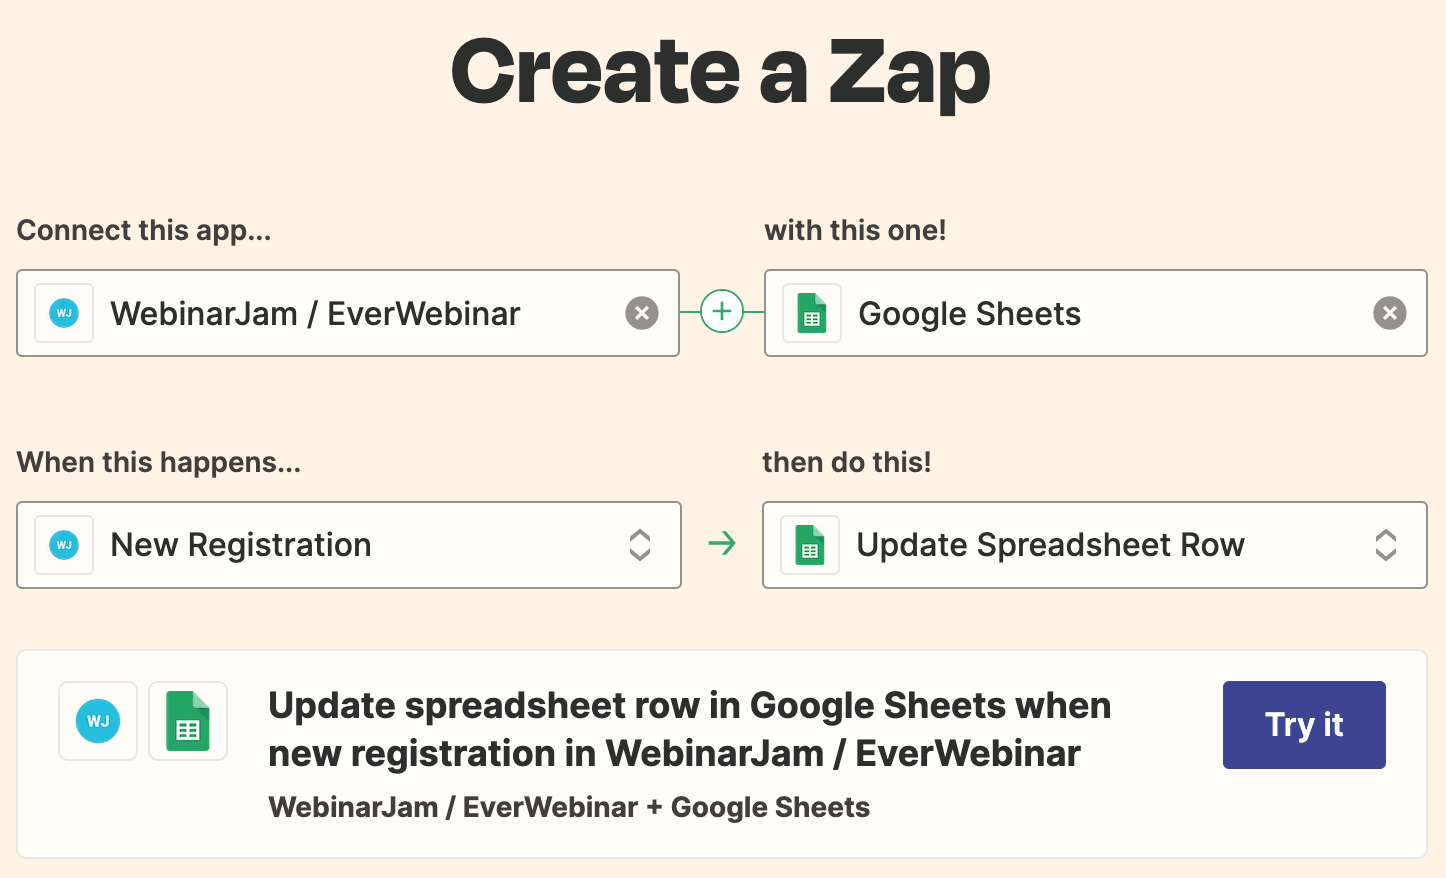 Zap example showing spreadsheet update when a new registration happens in WebinarJam